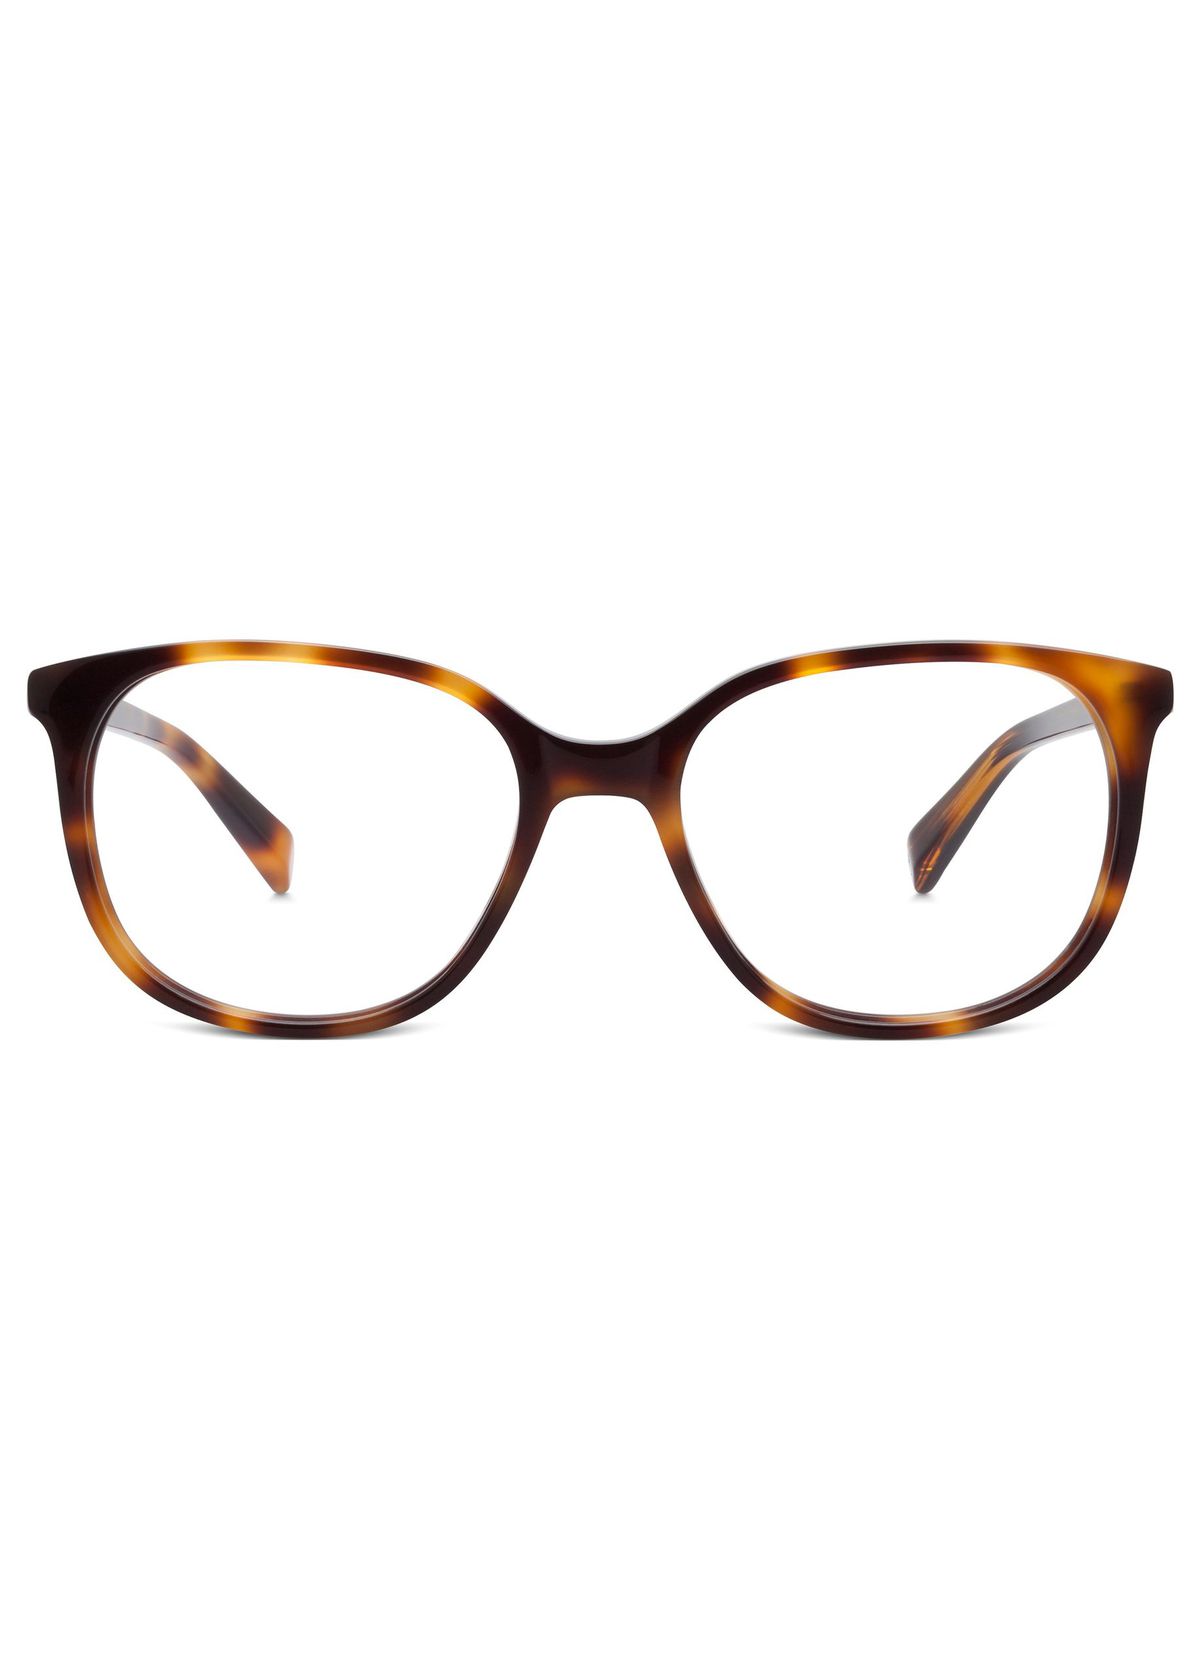 Warby Parker Laurel Eyeglasses, $95